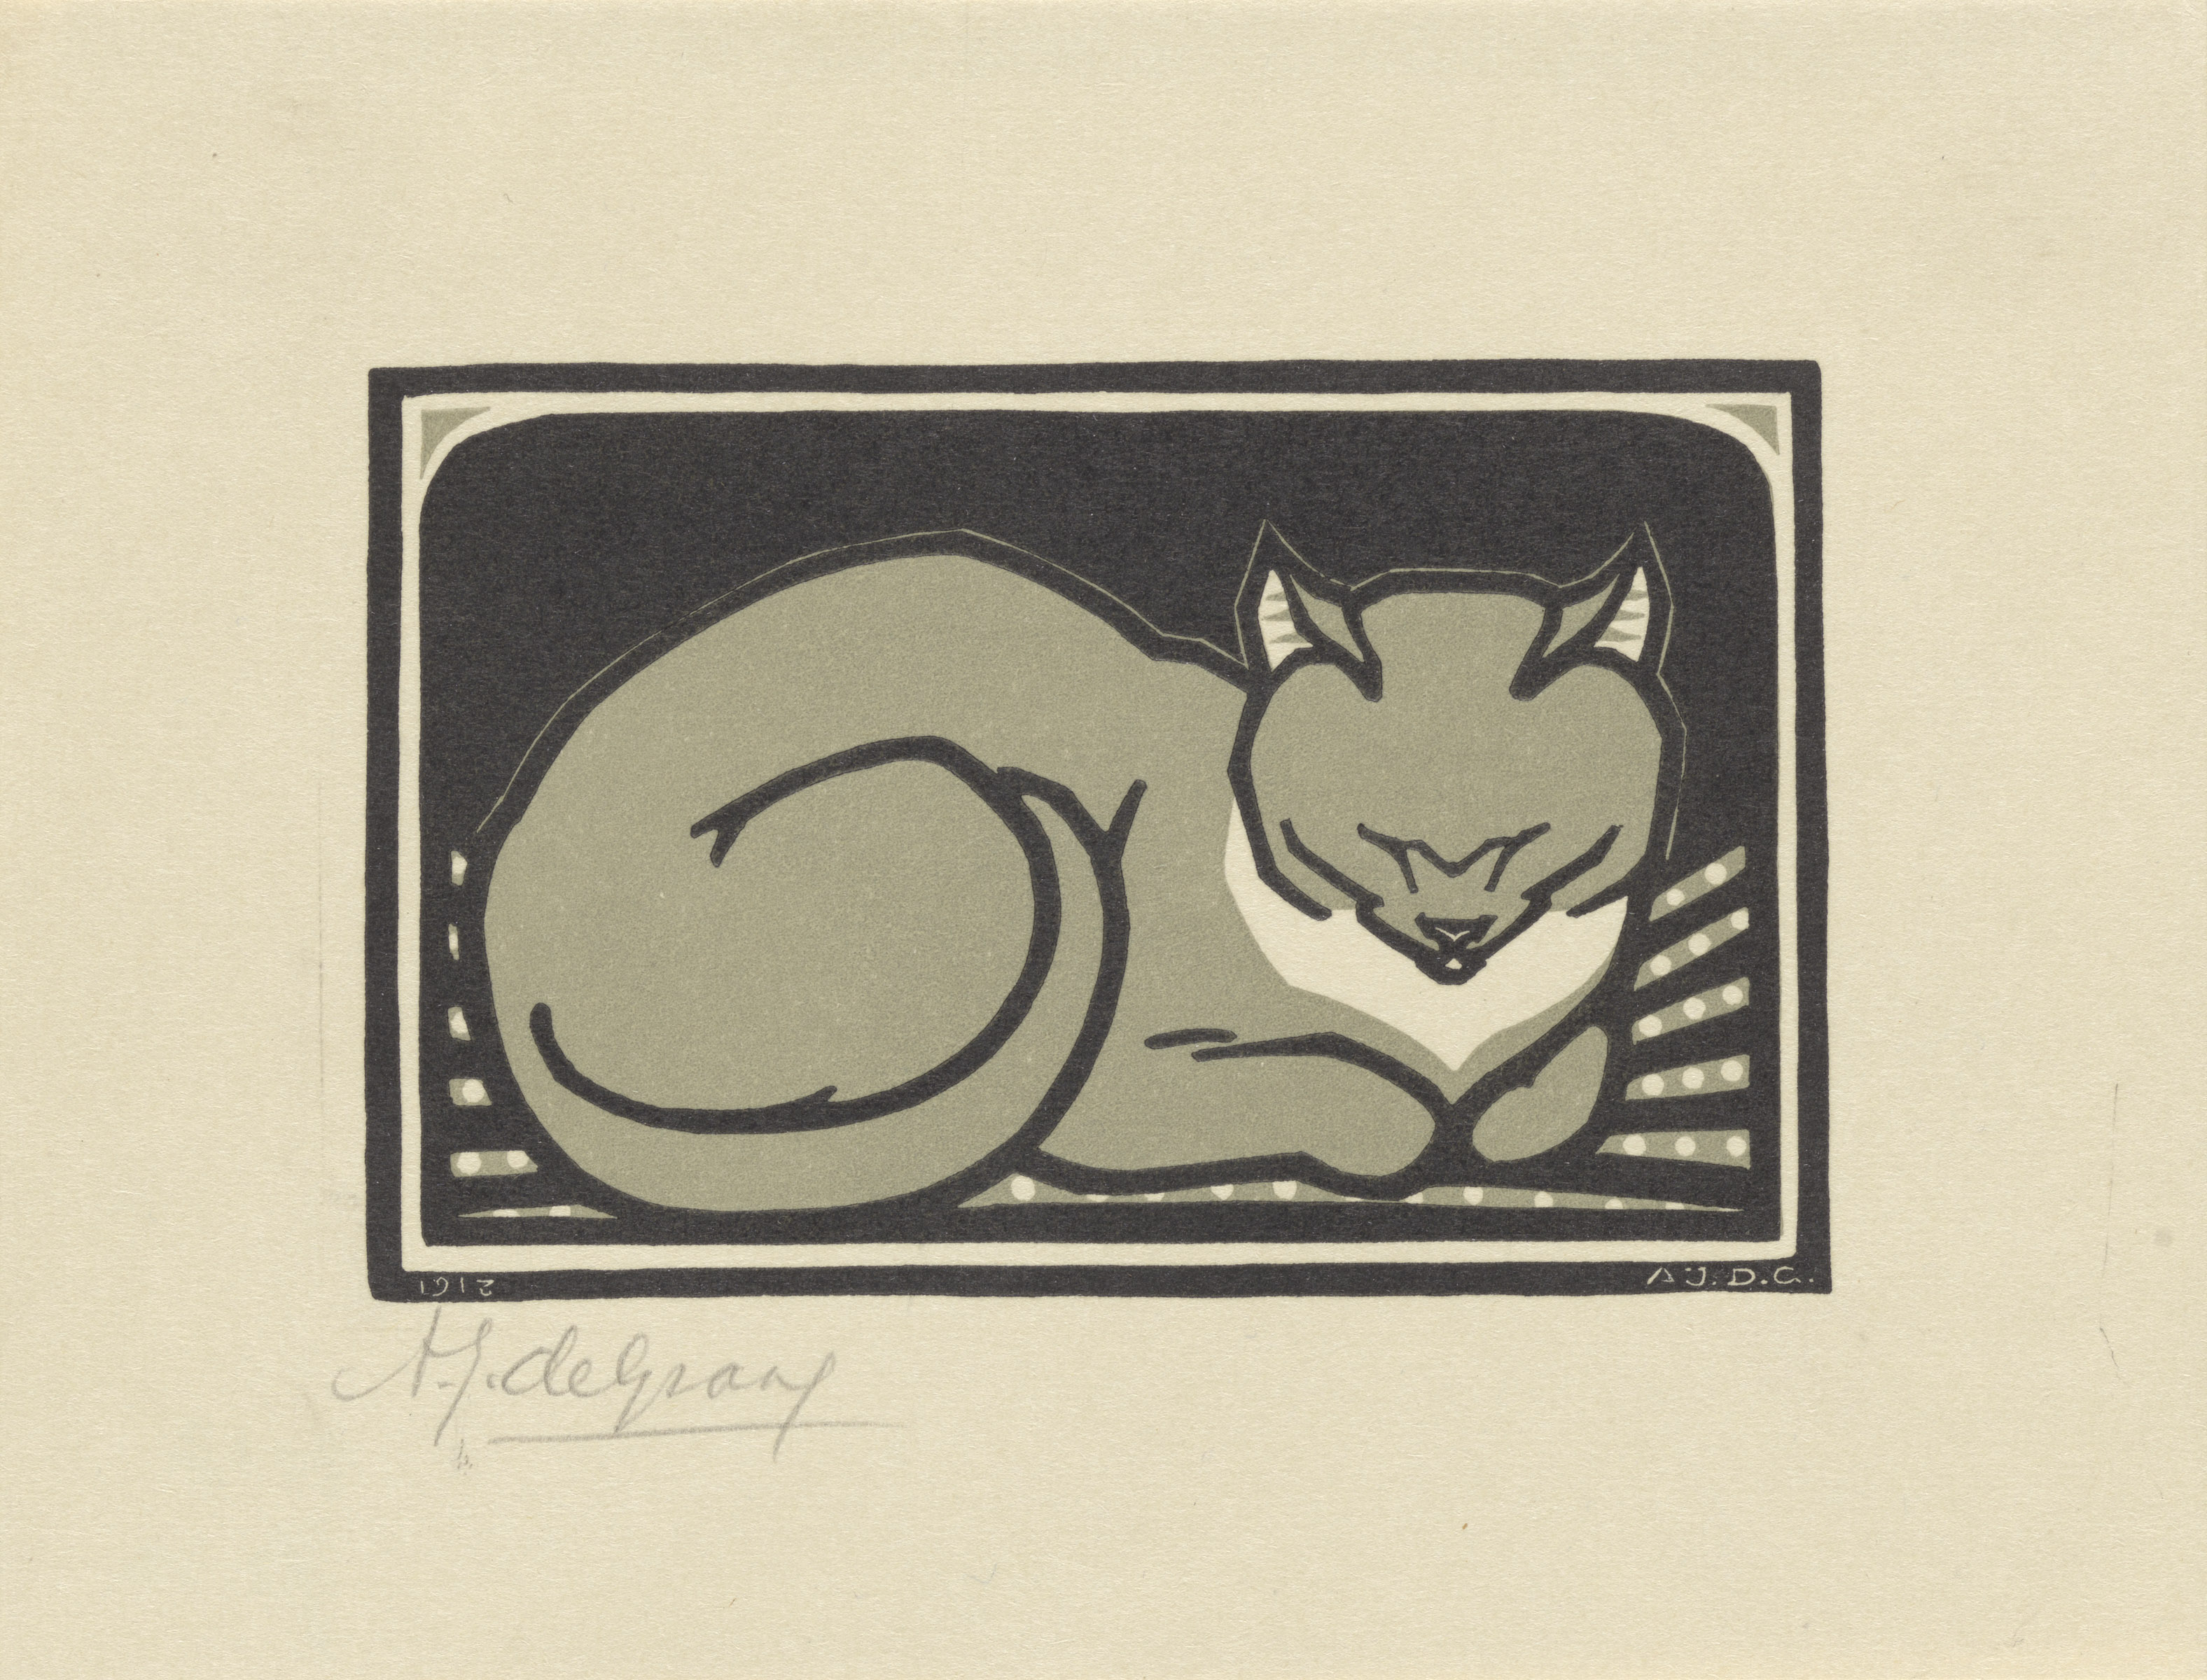 横たわる猫 by Julie de Graag - 1918年 - 12 x 15.5 cm 